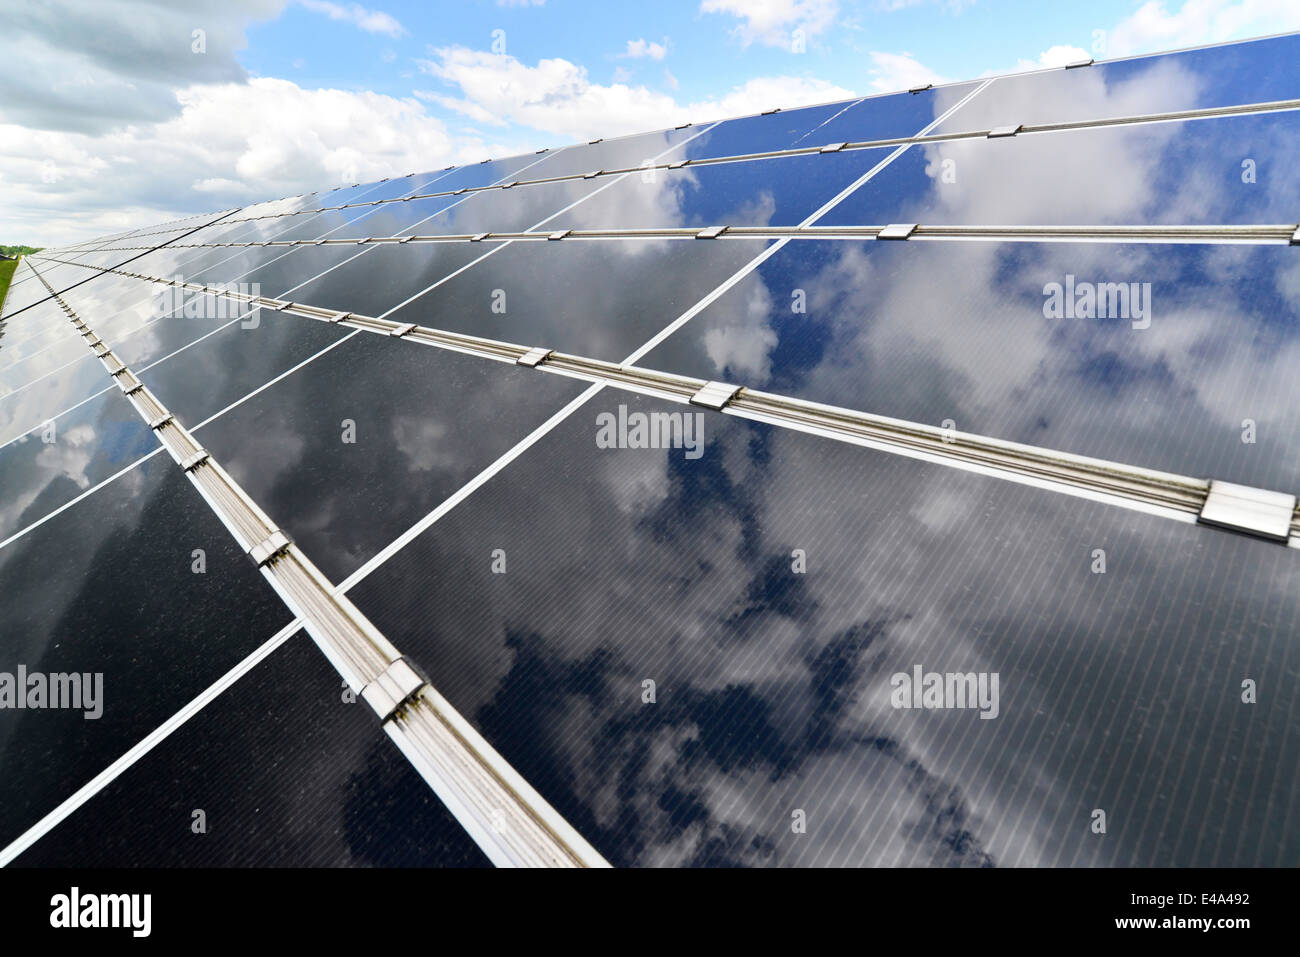 Germania, celle fotoelettriche della centrale solare con riflessi di nuvole, vista parziale Foto Stock